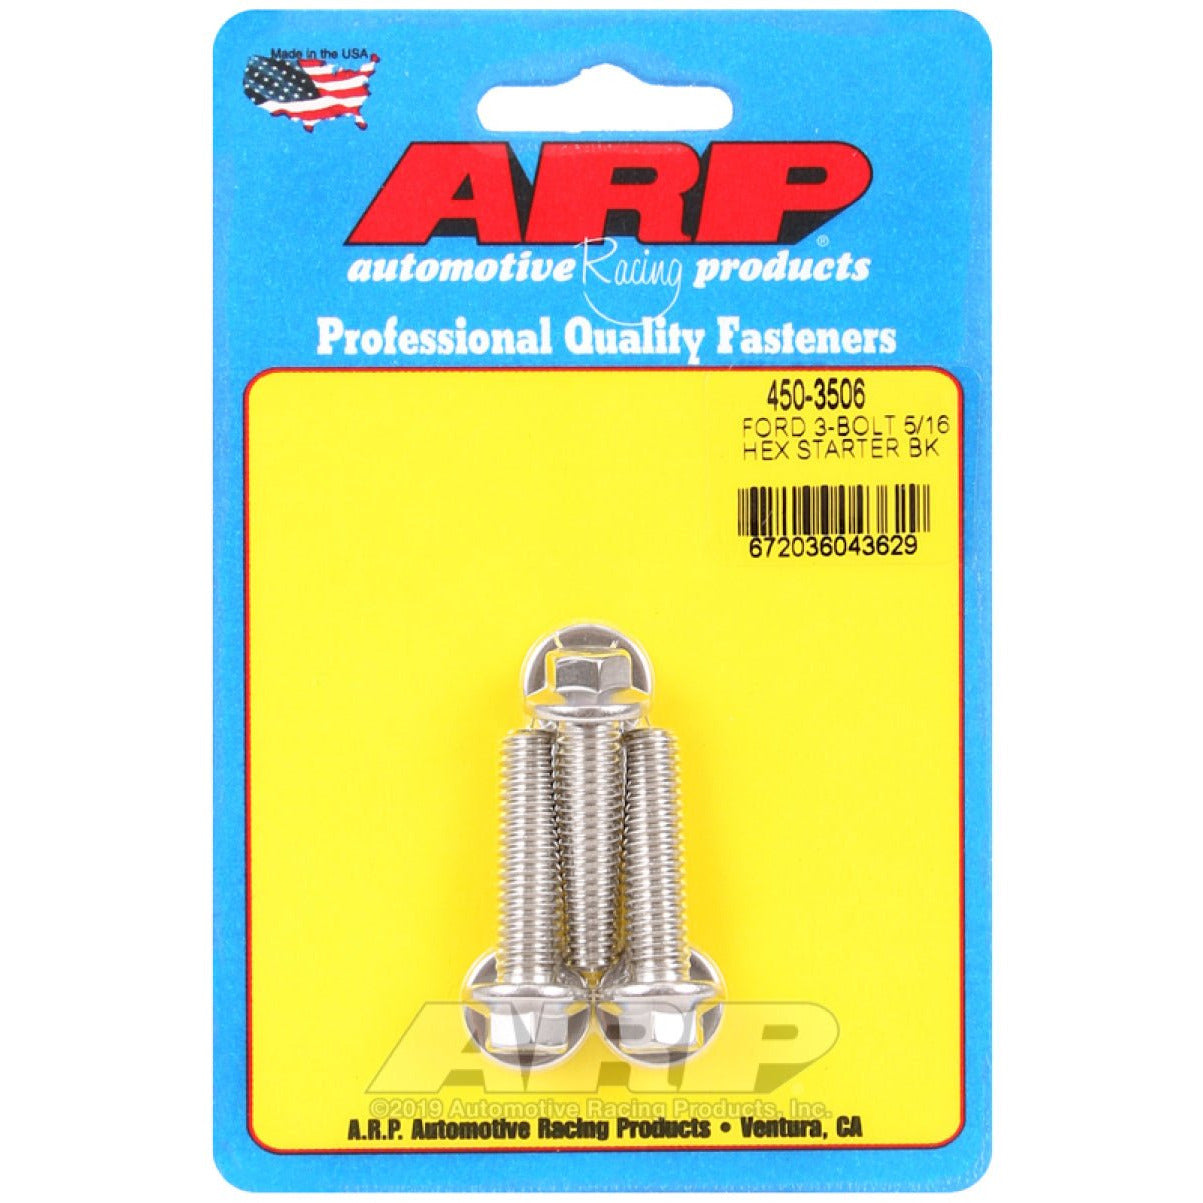 ARP Ford SS 3-Bolt 5/16in Hex Starter Bolt Kit ARP Hardware Kits - Other